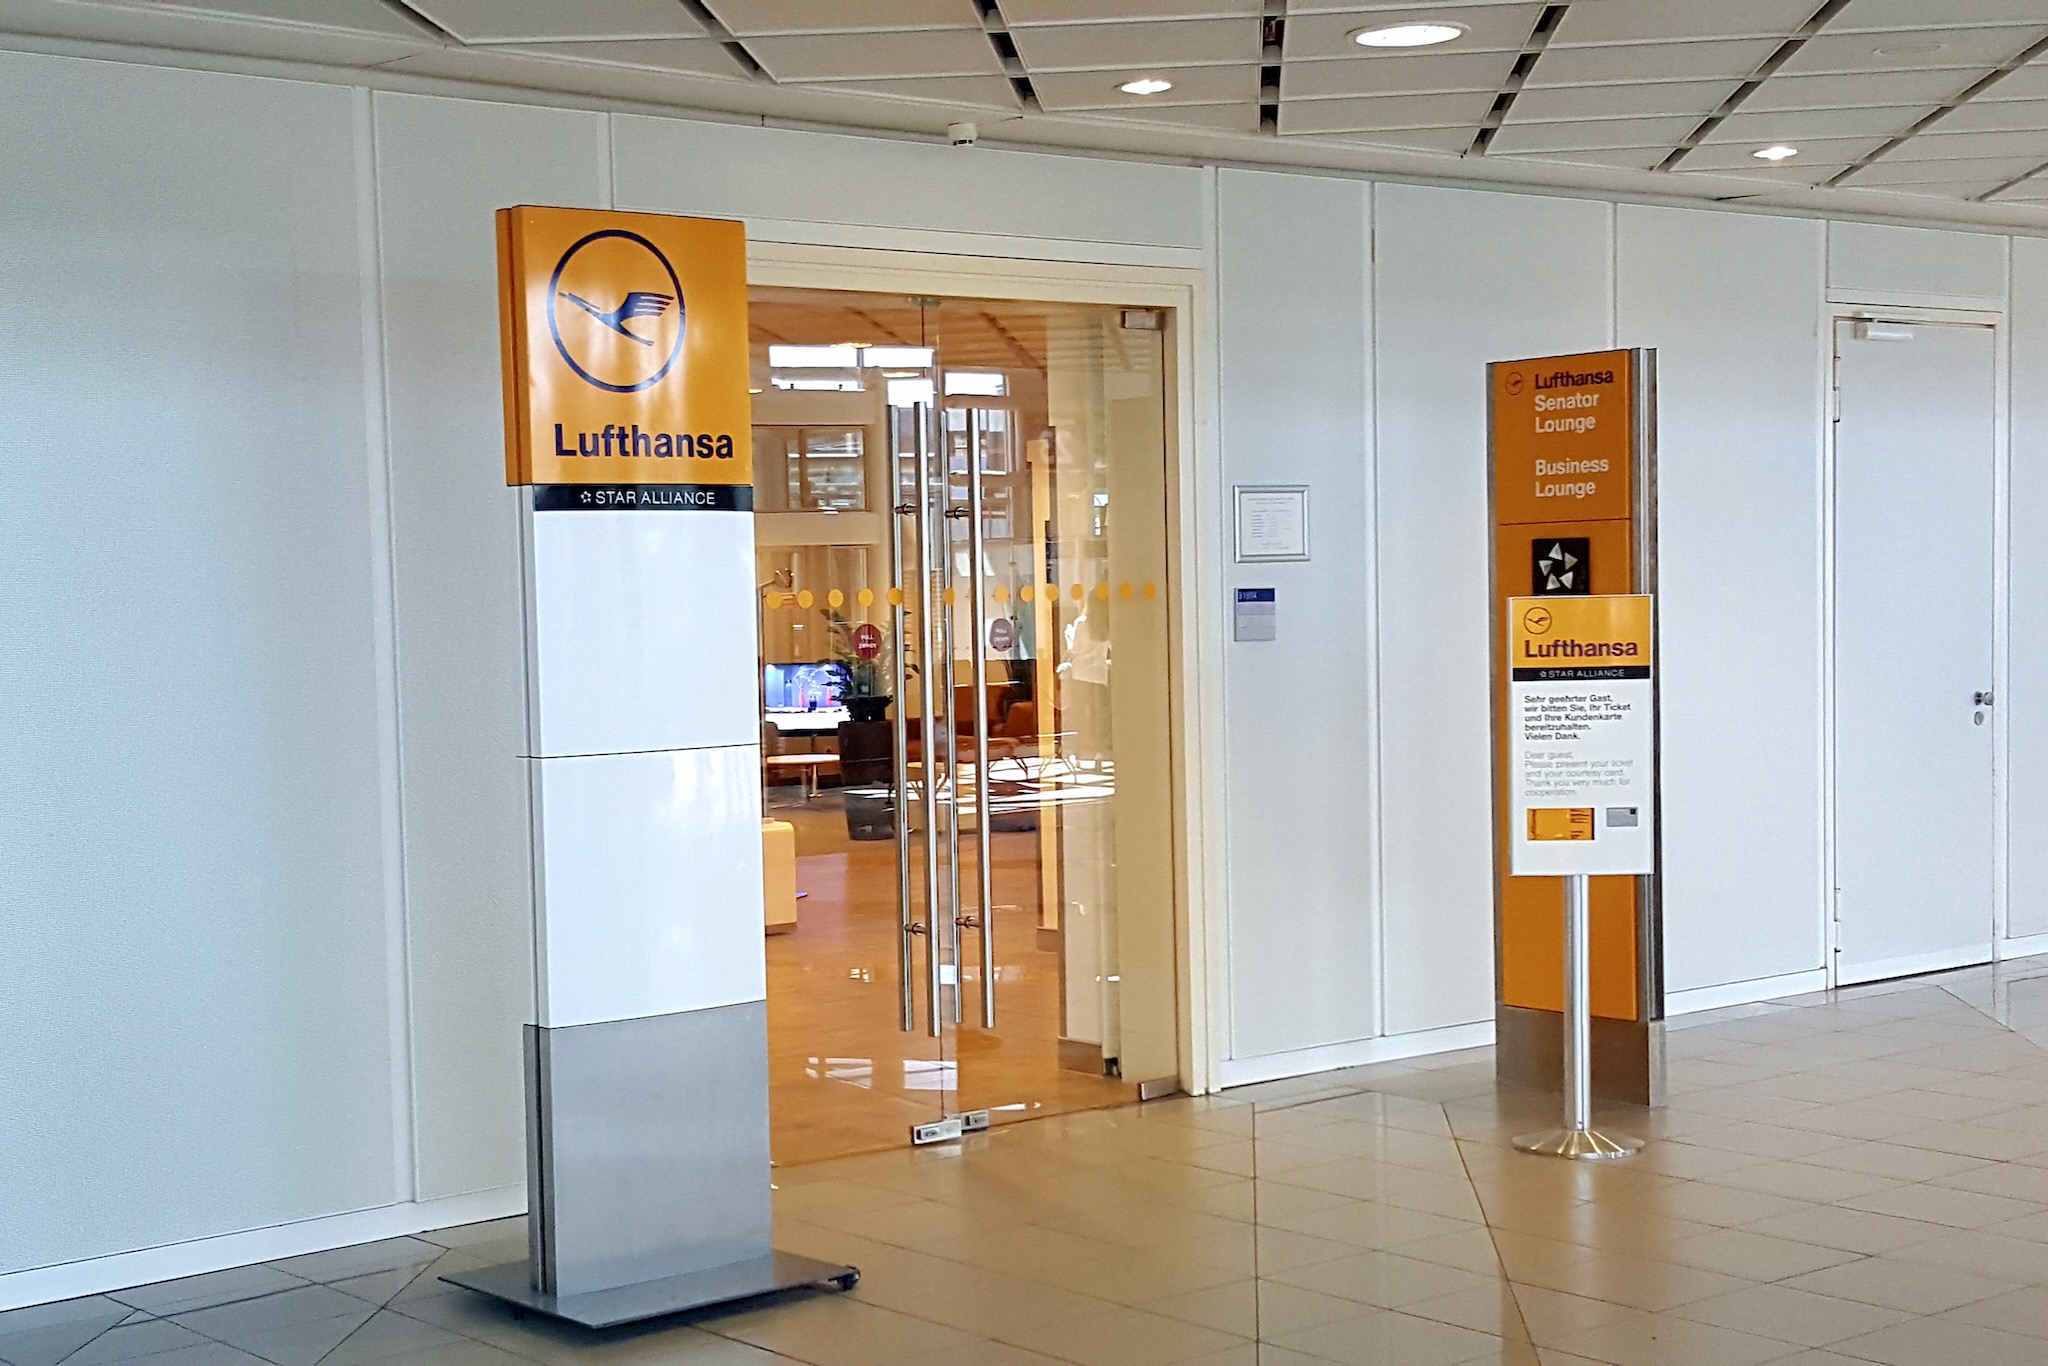 Eingang zur Lufthansa Business Lounge am Flughafen Leipzig/Halle